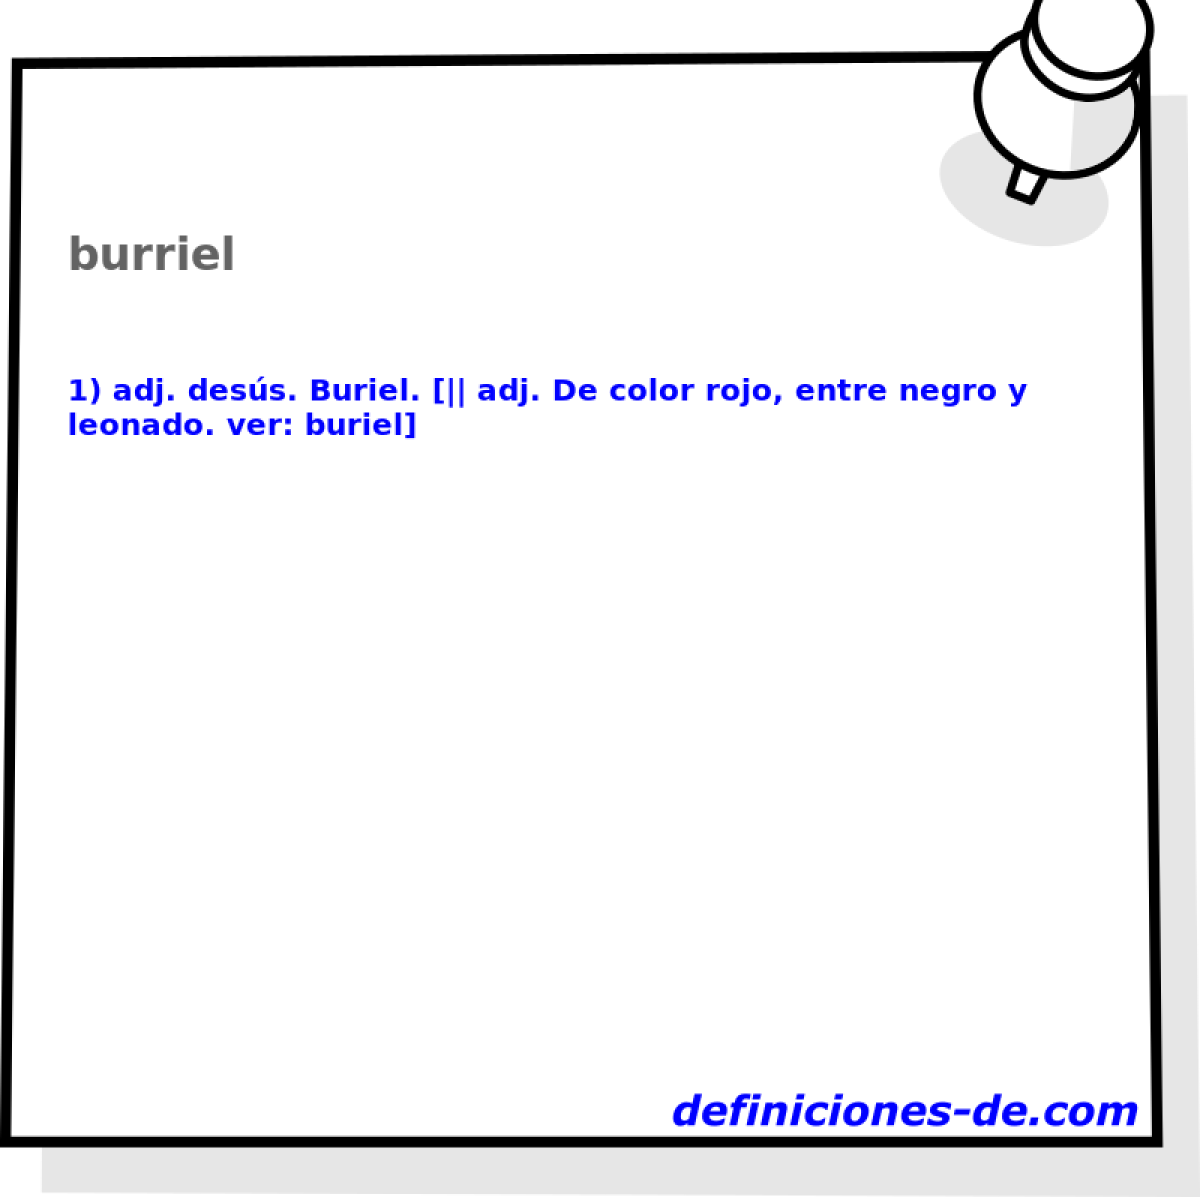 burriel 